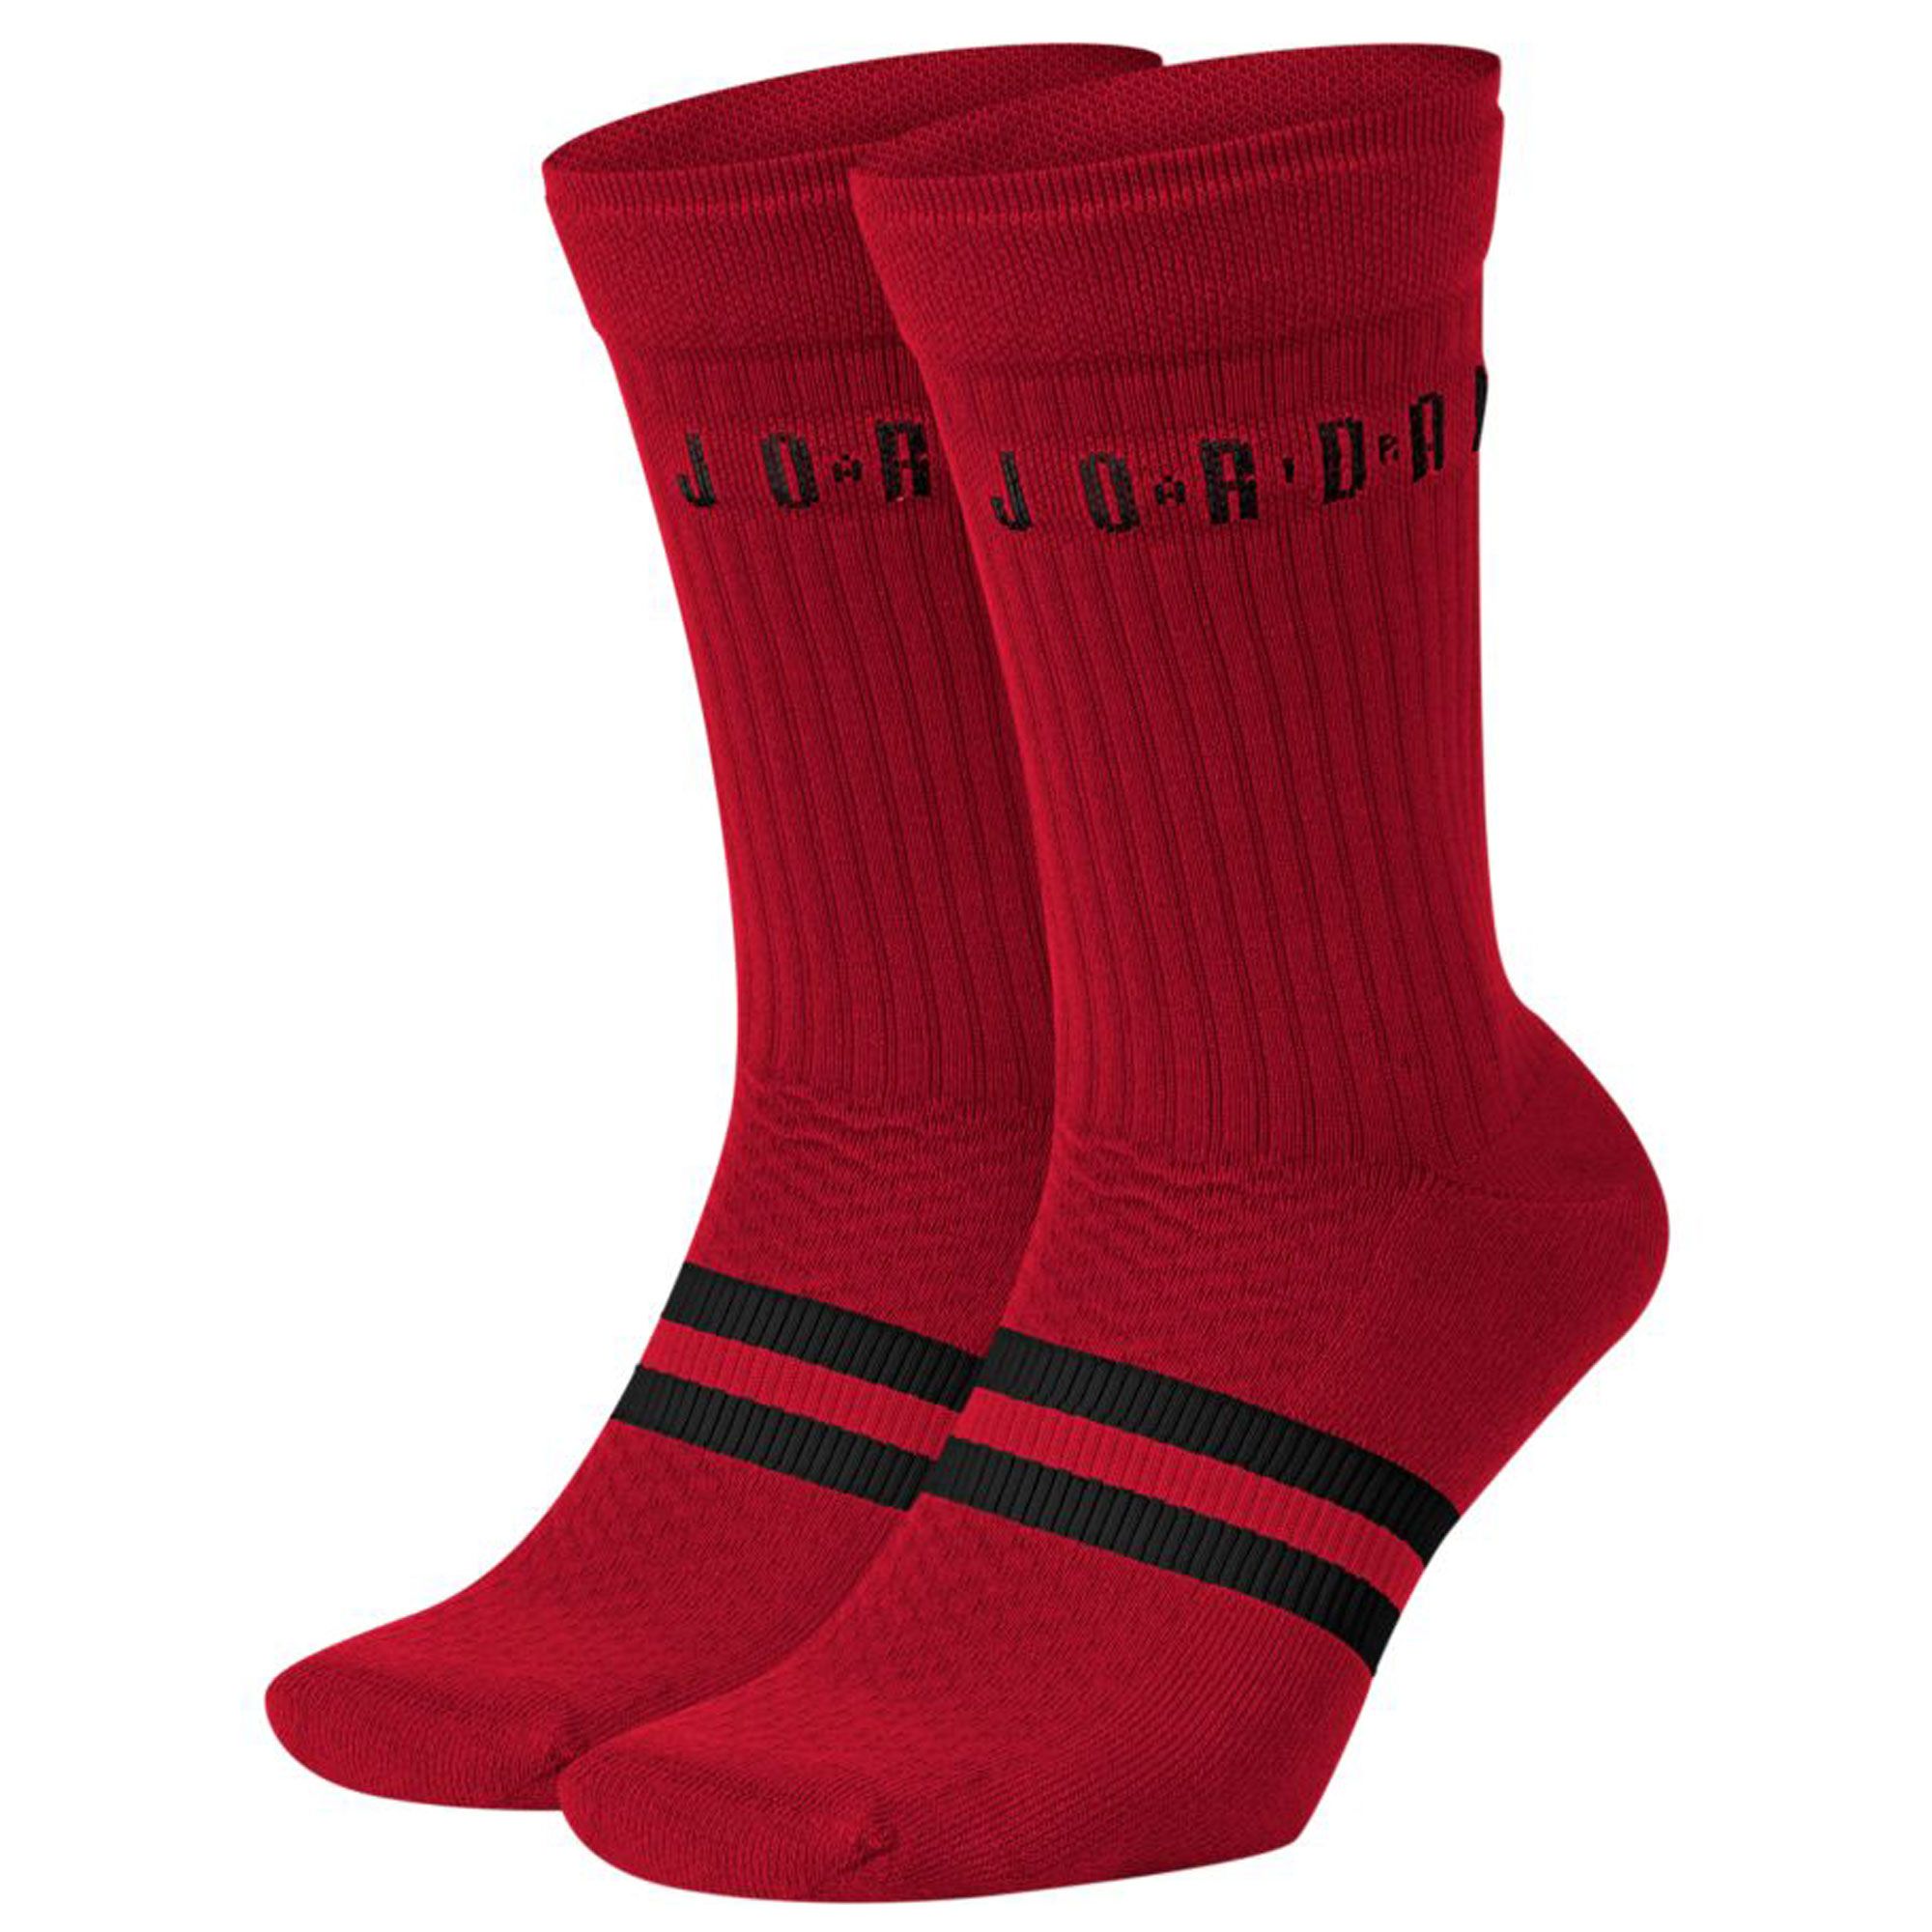 black and red air jordan socks